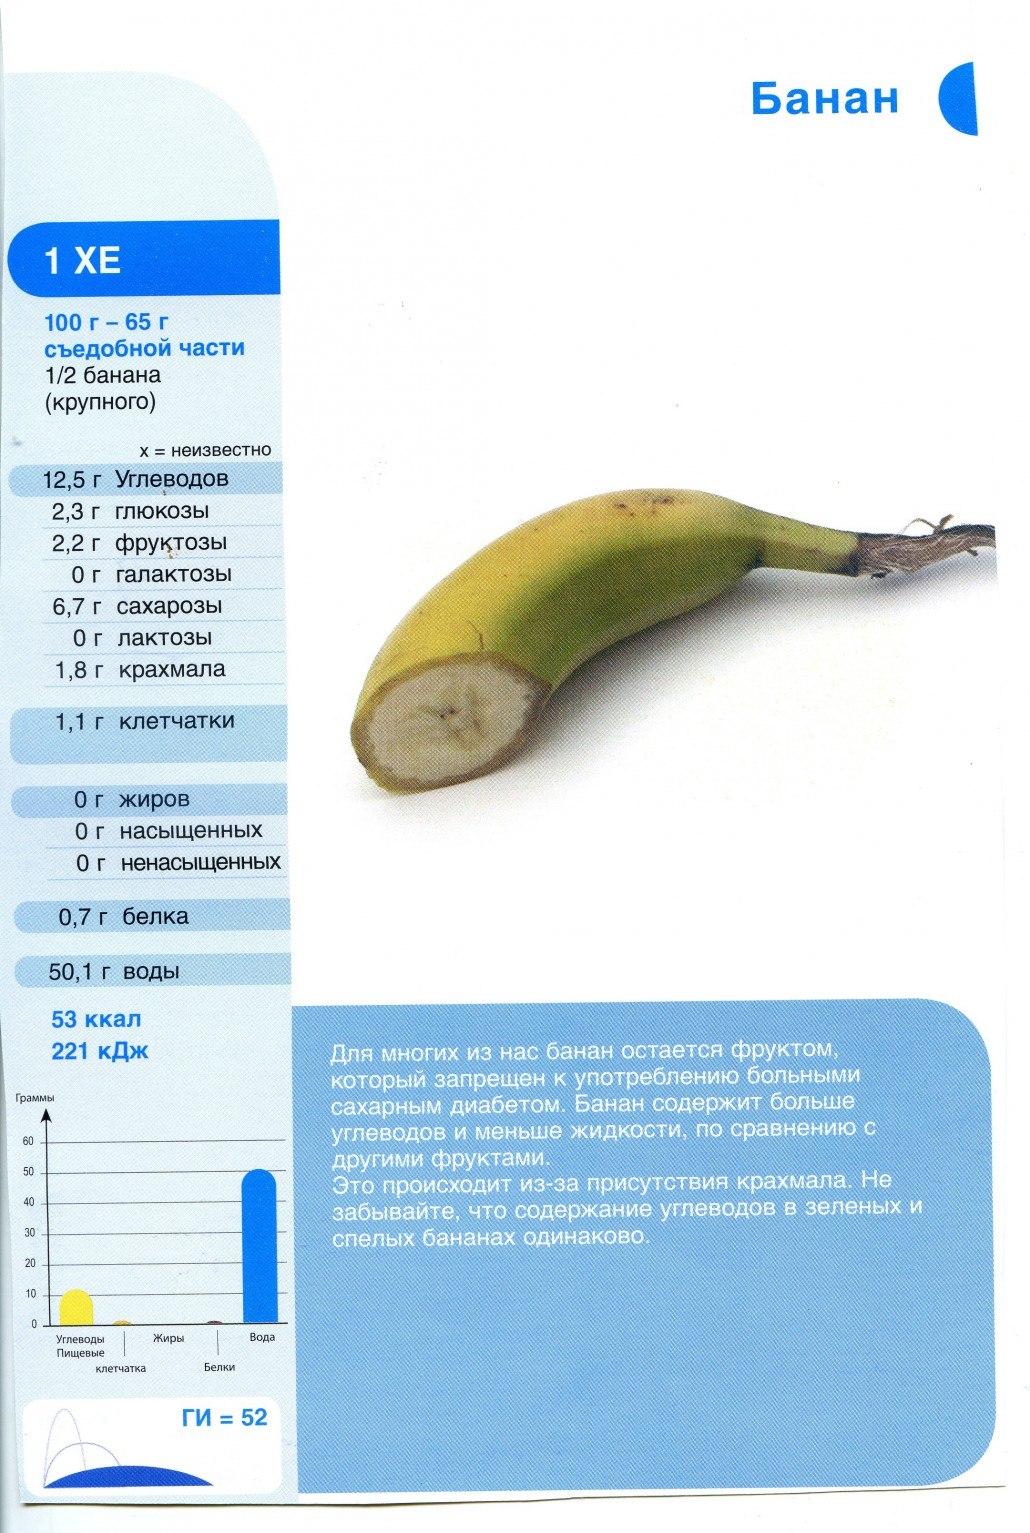 1 банан килокалории. Сколько белков жиров и углеводов в банане на 100 грамм. Энергетическая ценность банана в 100 граммах. Калорийность банана 100 гр. Энергетическая ценность банана 1 шт без кожуры.